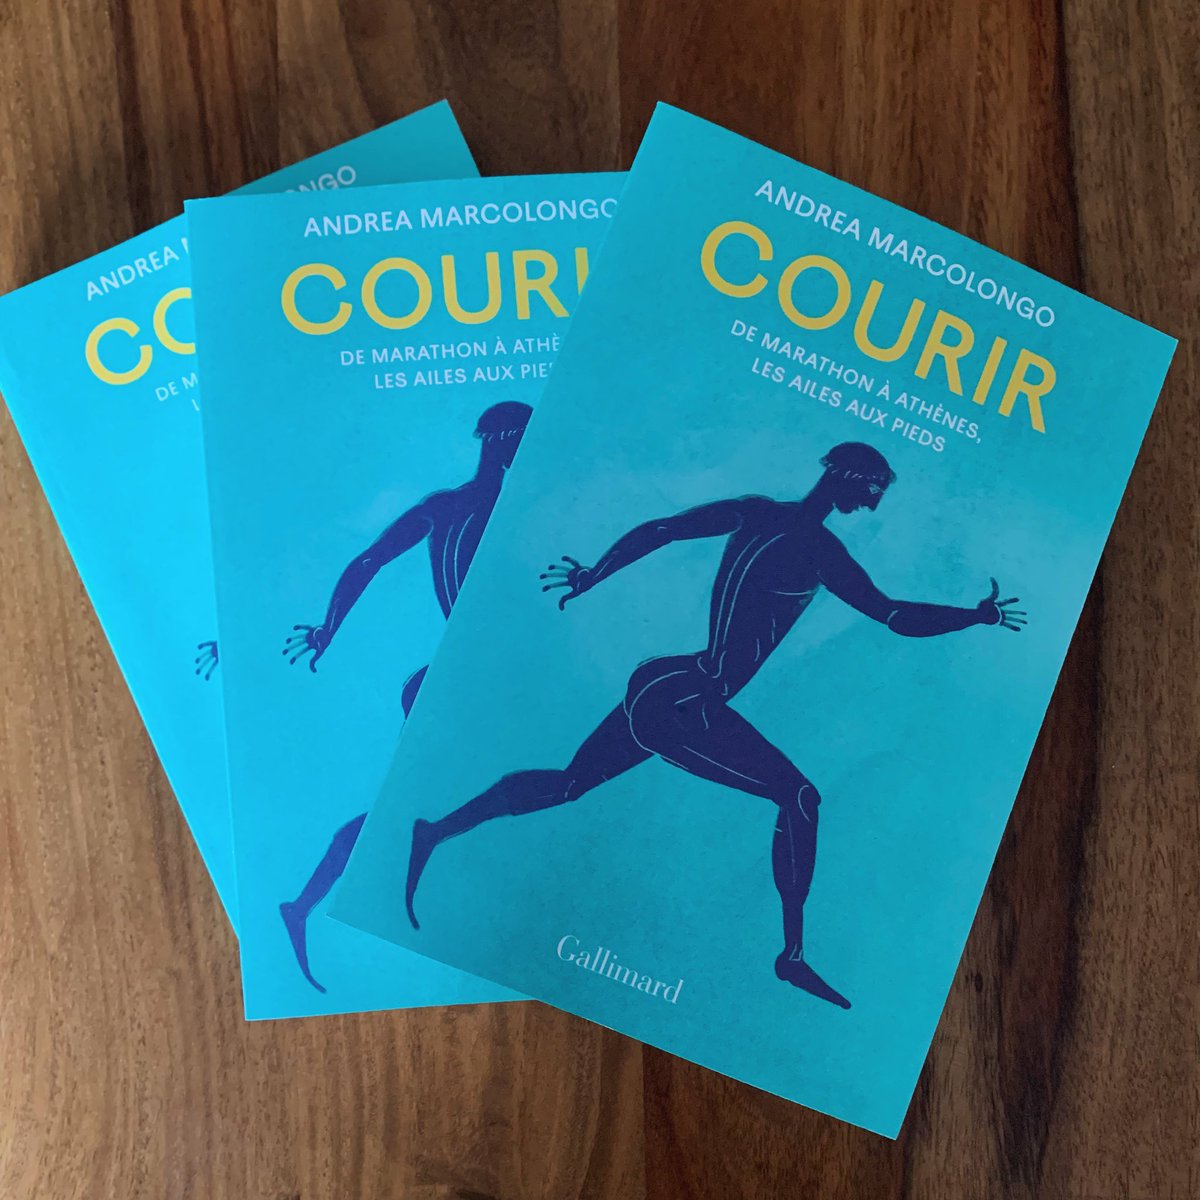 Je suis ravie de partager avec mes lecteurs français cette invitation à COURIR avec moi qui paraît aujourd’hui en librairie chez @Gallimard 🏃‍♀️

Lancement le lundi 27 mai à 19h à la @libcompagnie à Paris!